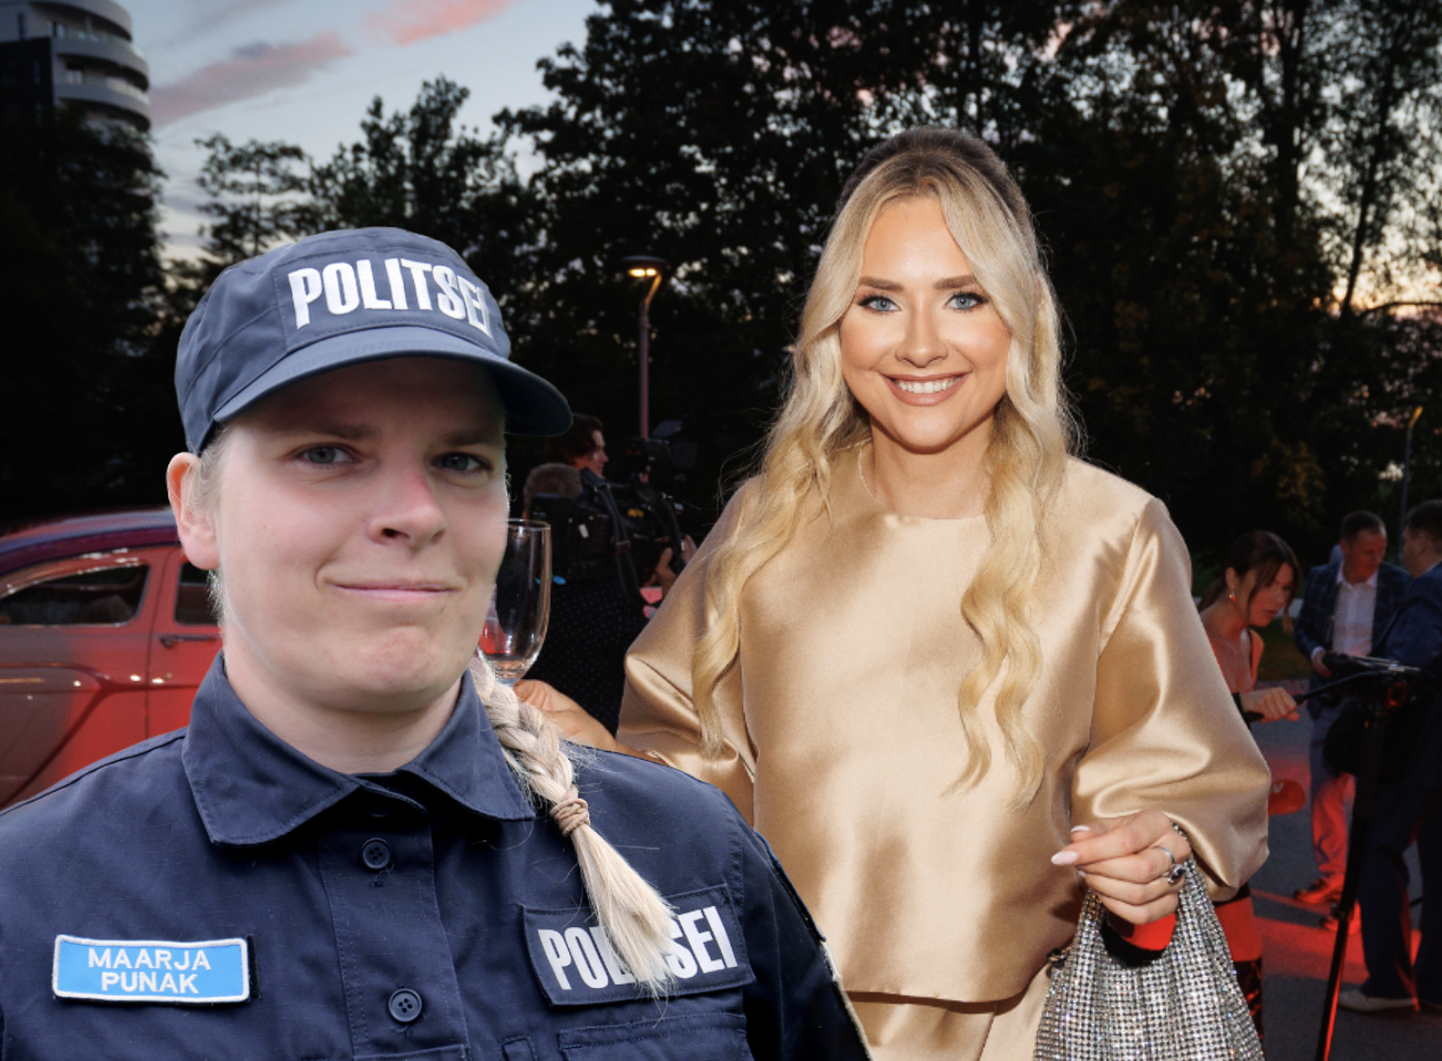 Politseinik Maarja Punakule jäi silma Brigitte Susanne Hundi jutt autoroolis söömisest.